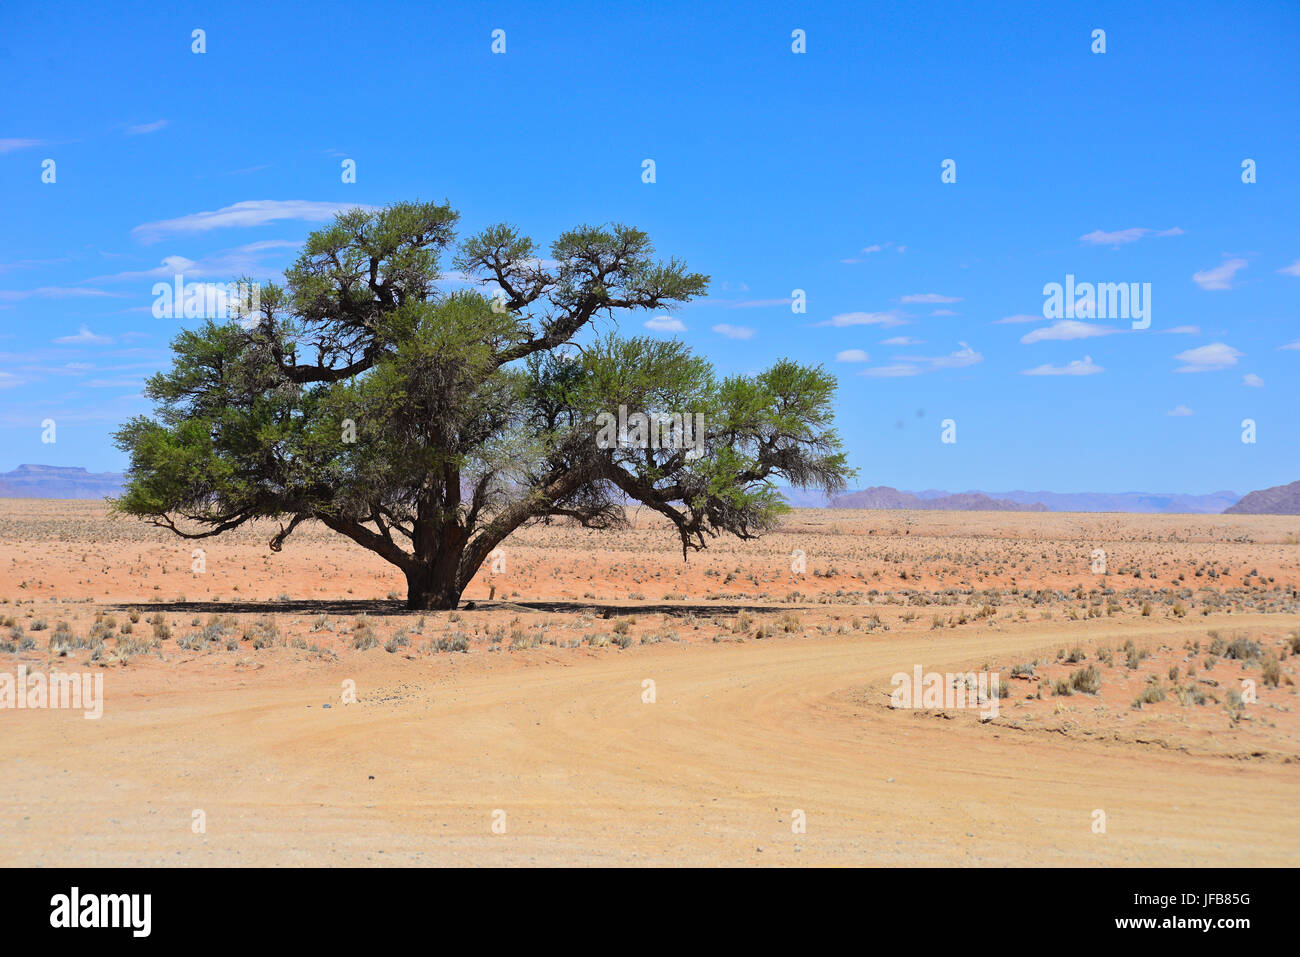 namibian landscape Stock Photo